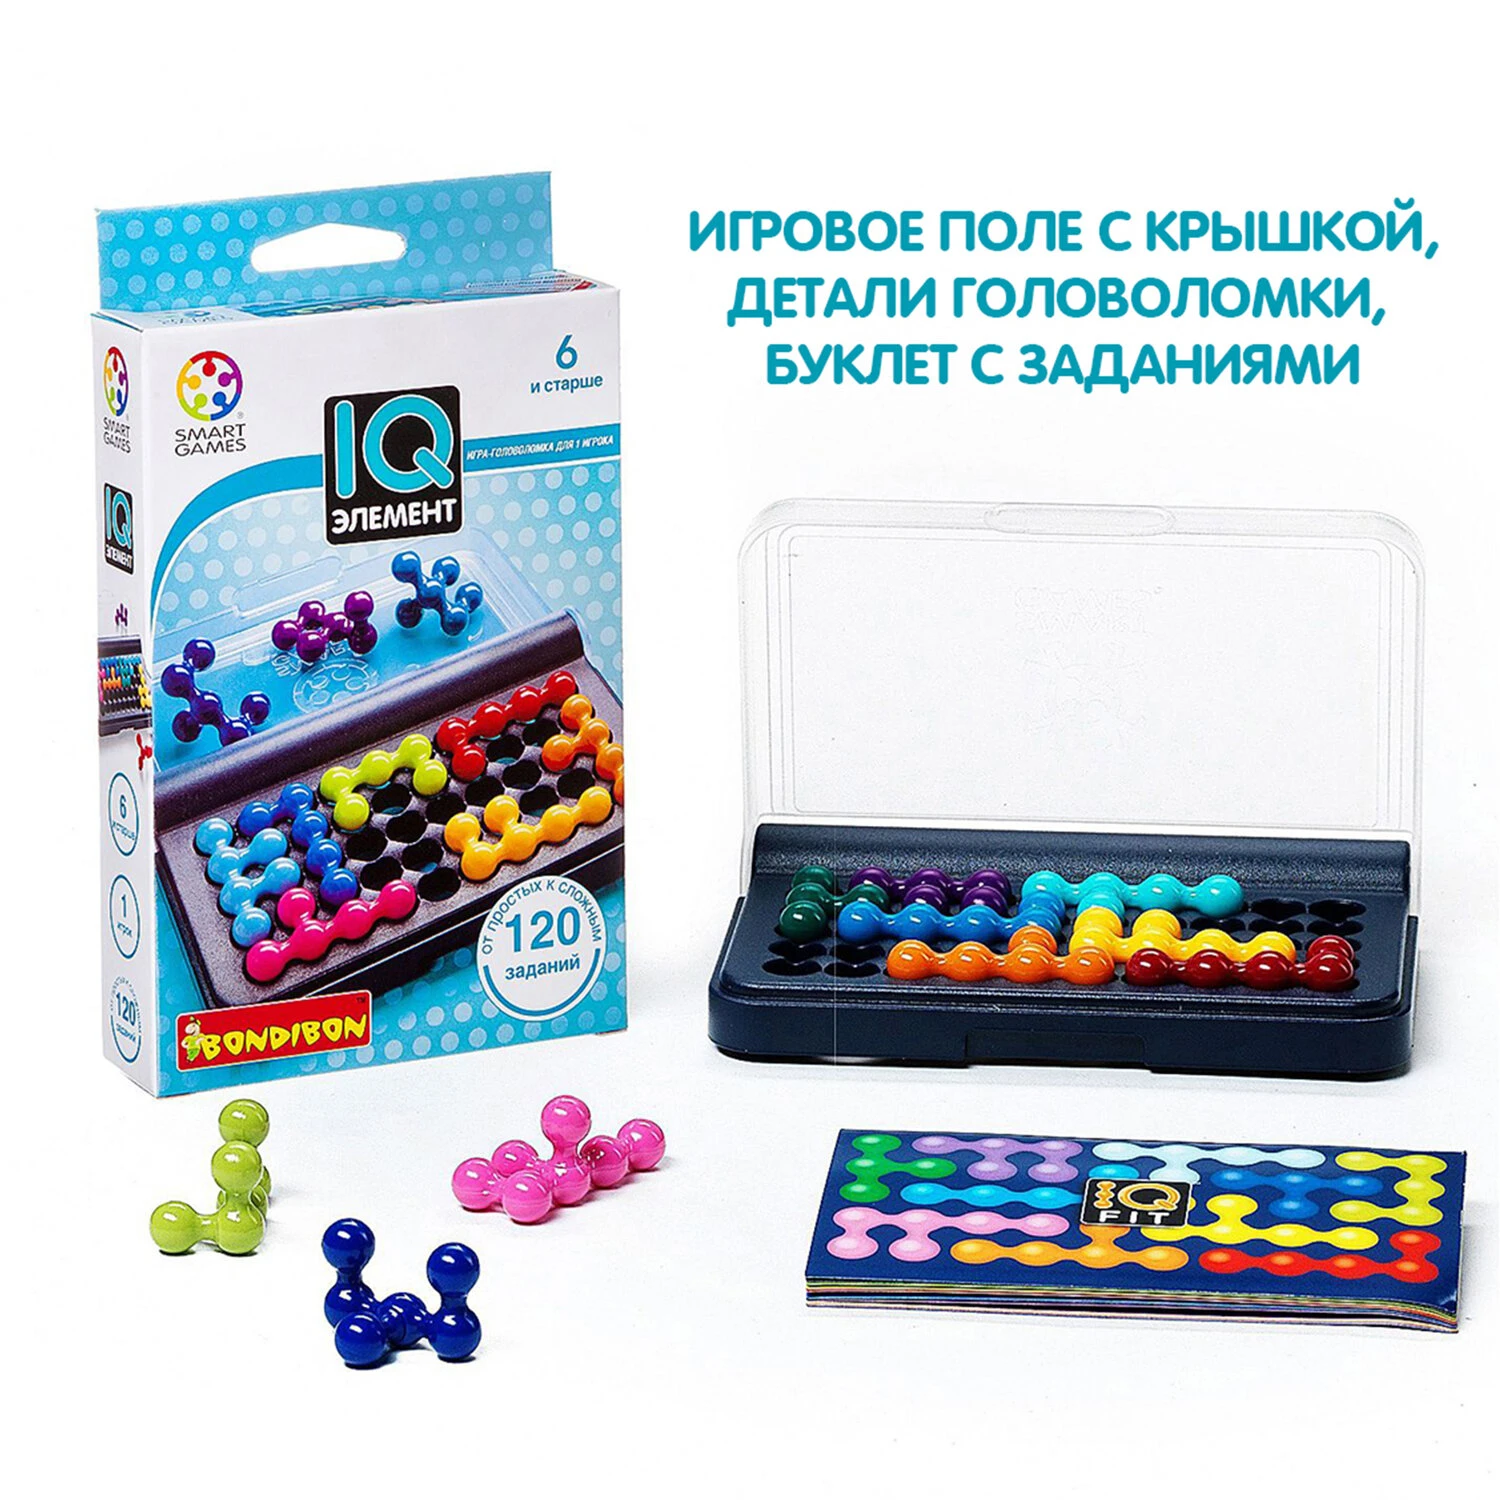 Smart Games Купить в Украине с Доставкой | Интернет-Магазин ROZUM